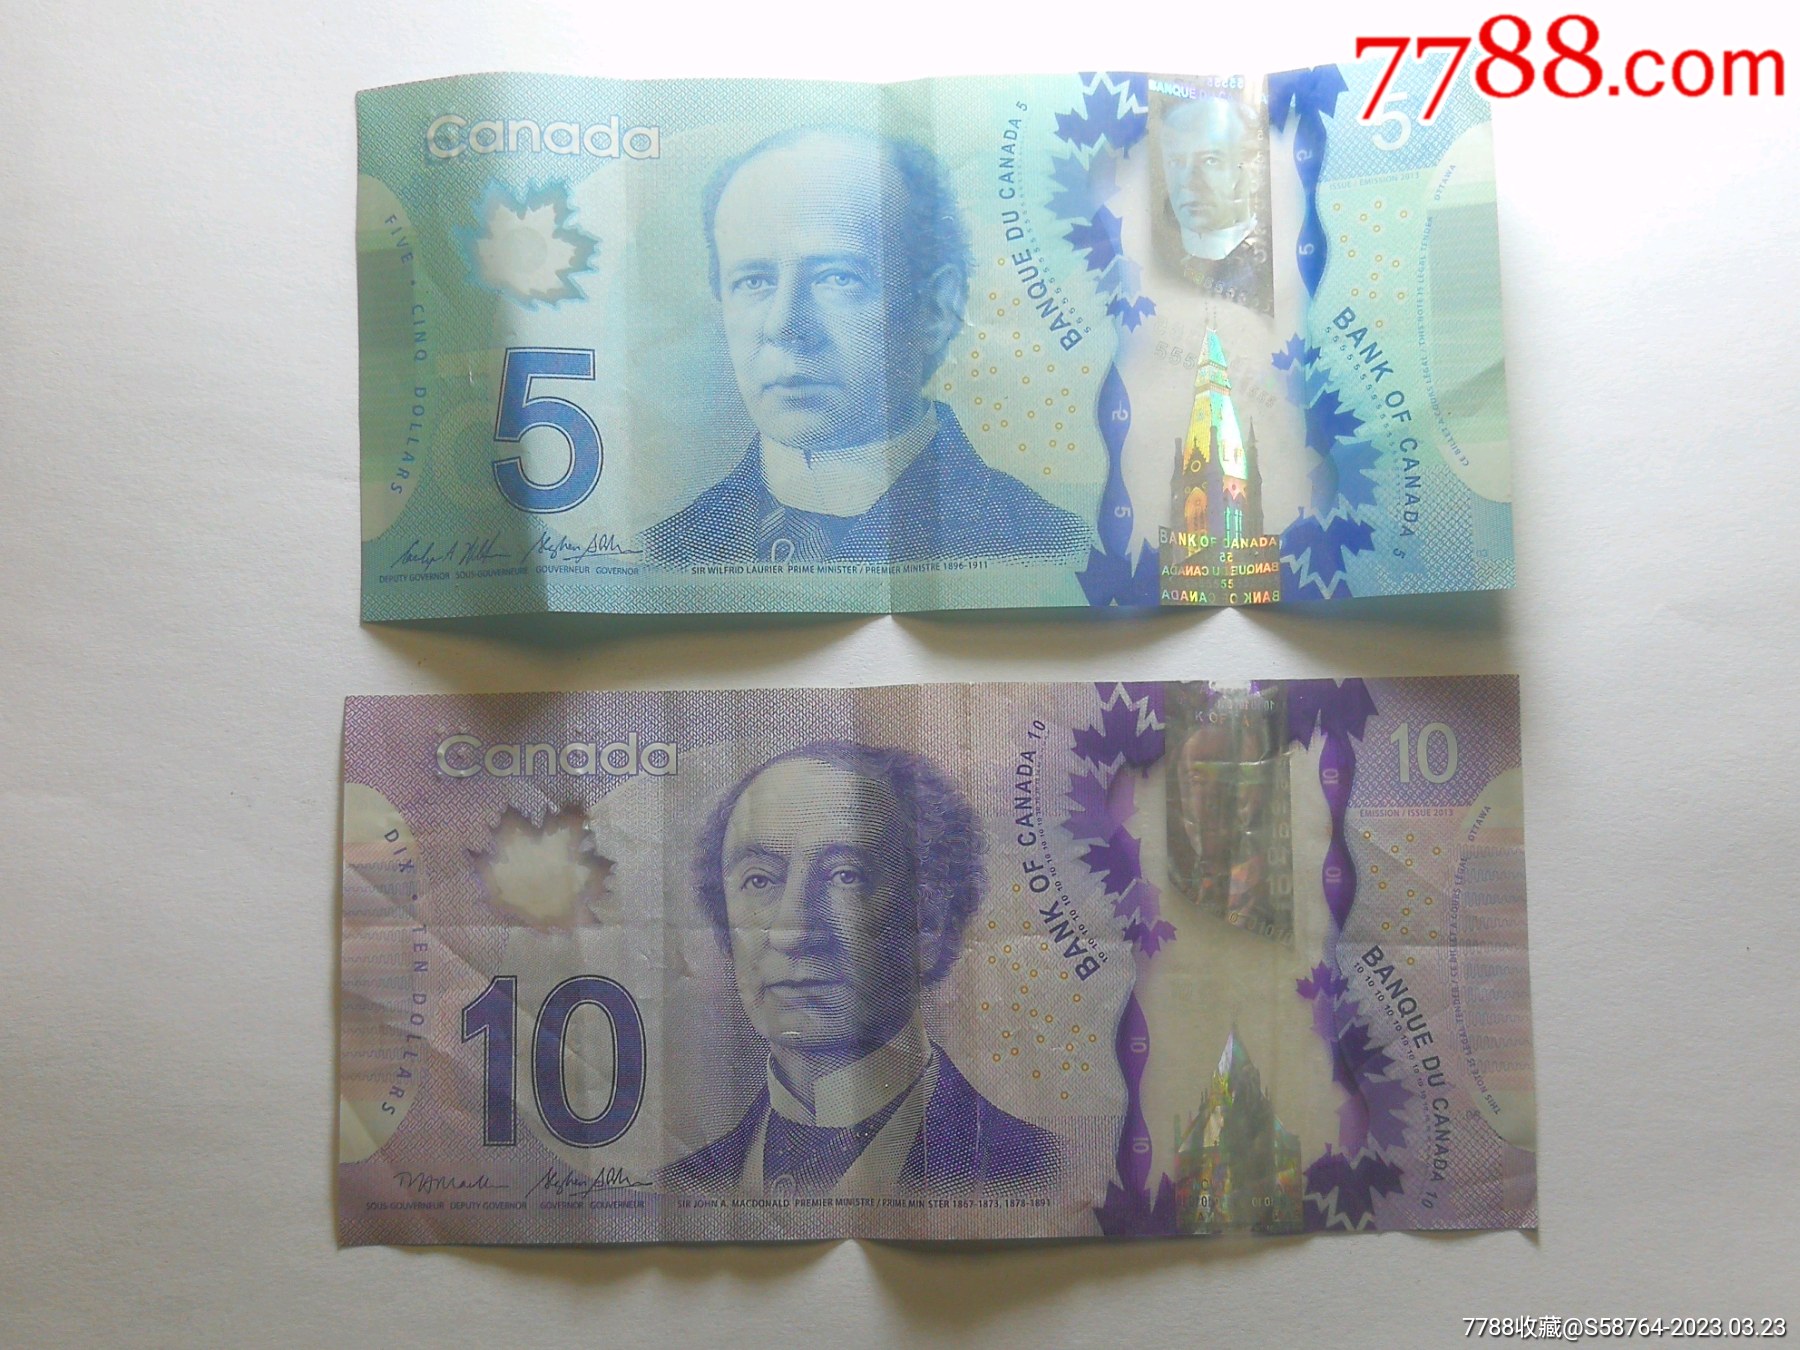 Canadian Money | ASKMigration: Canadian Lifestyle Magazine